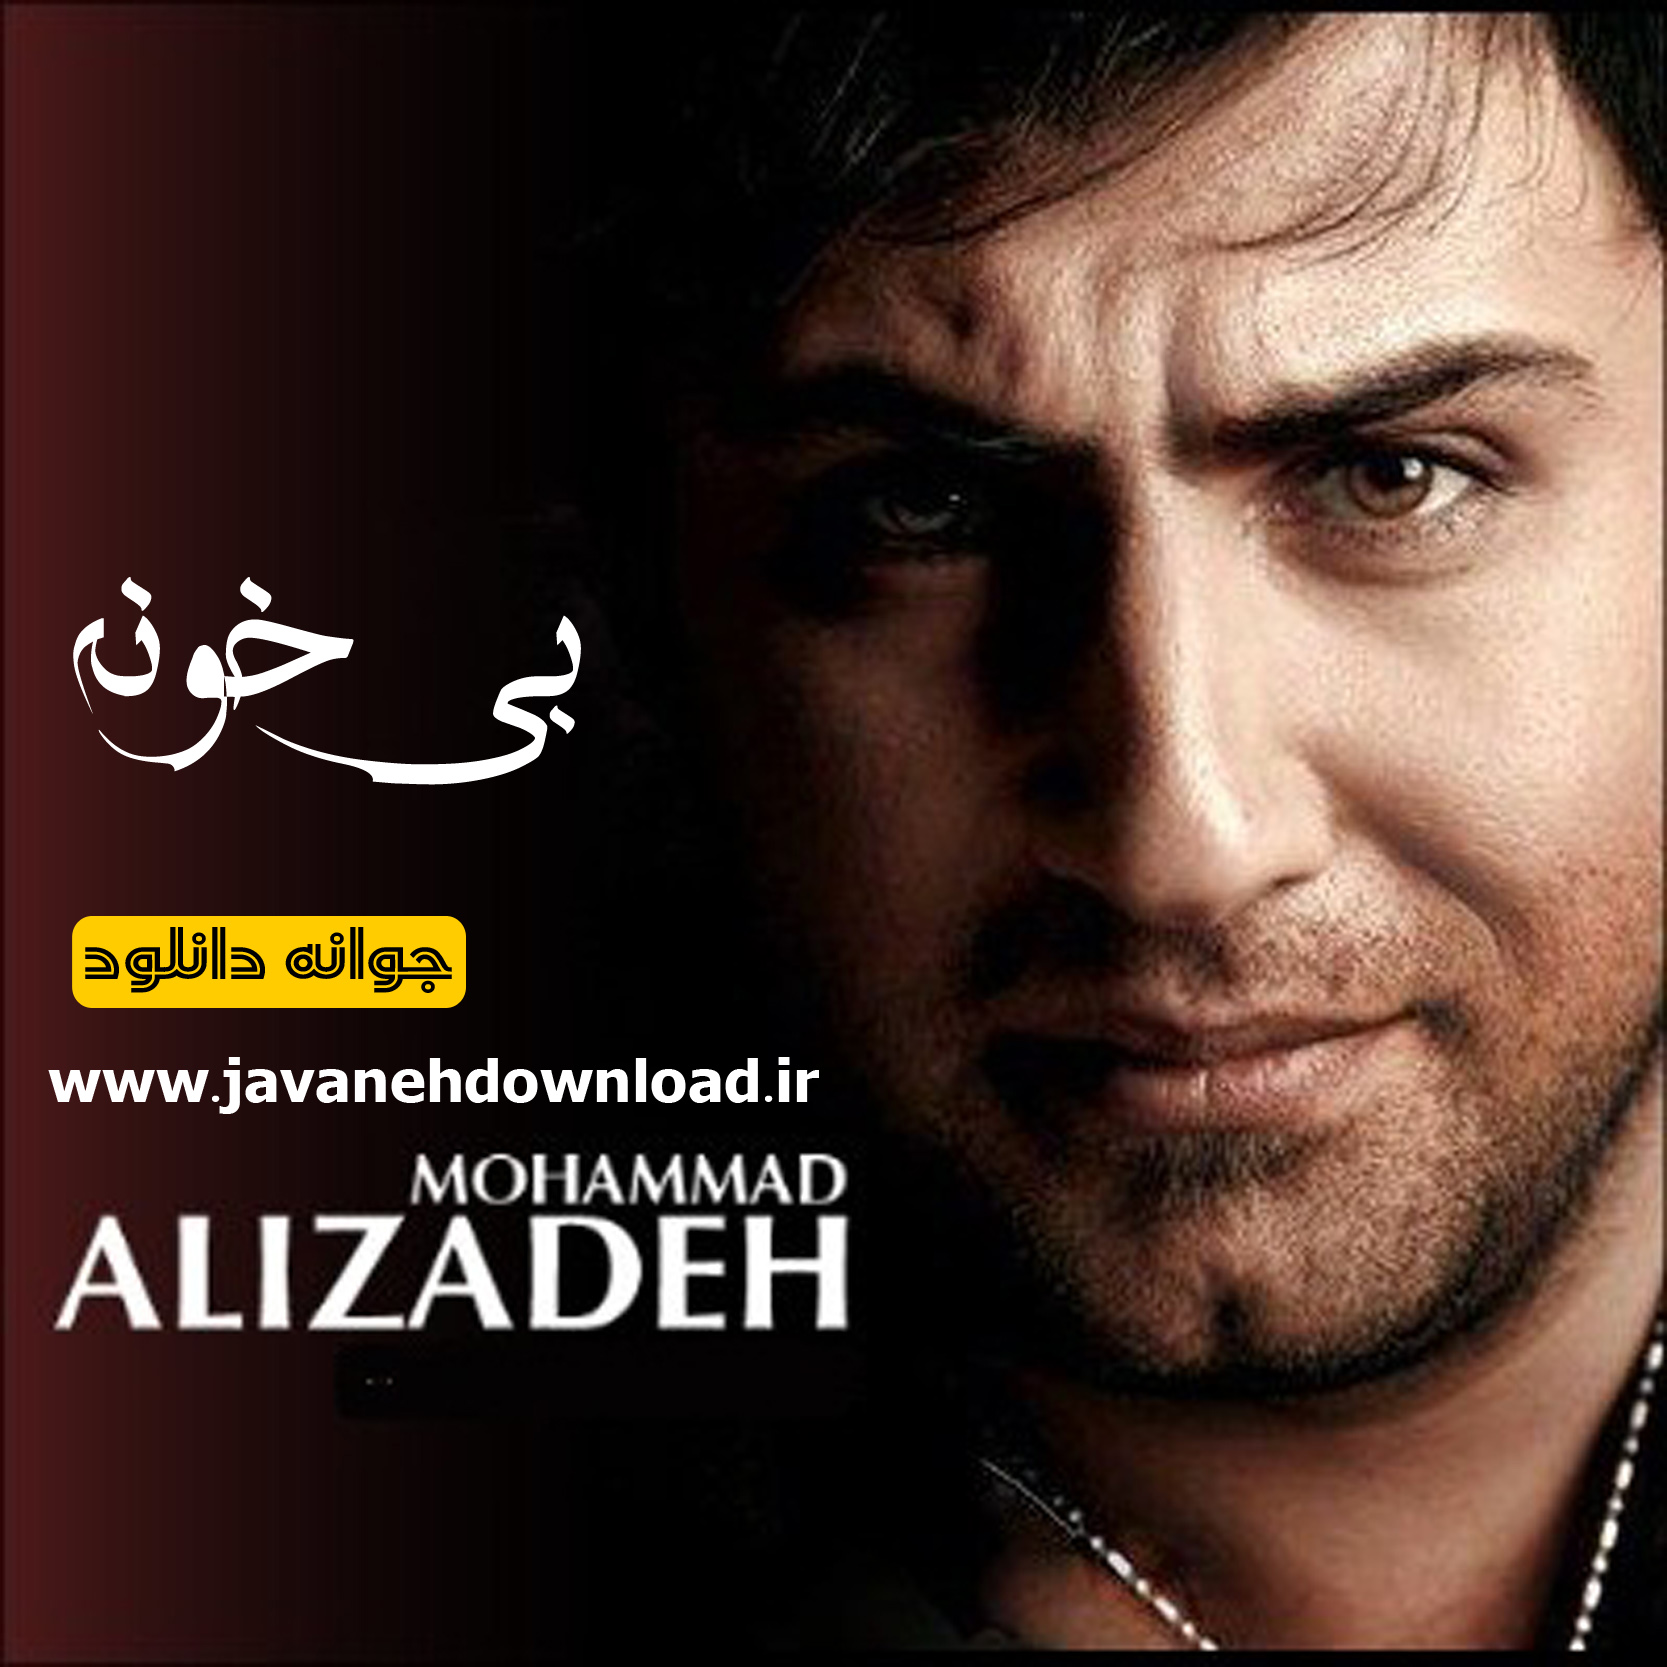 دانلود آلبوم محمد علیزاده با نام بی خونه